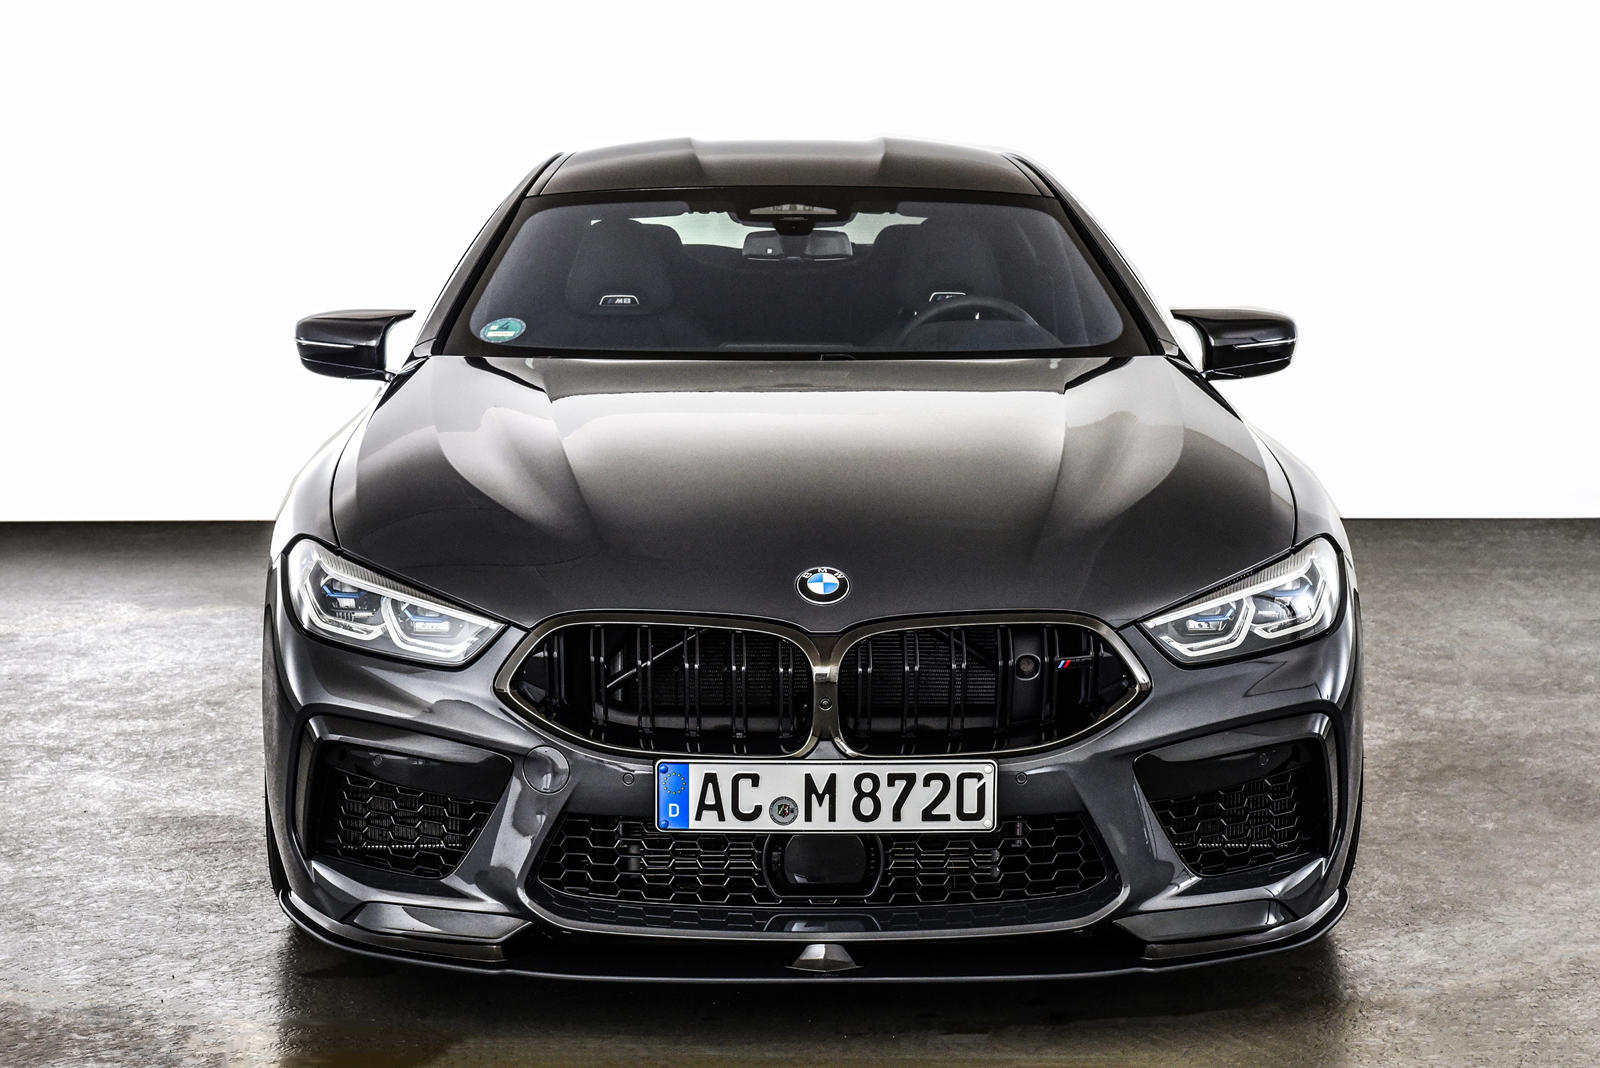 BMW M8 Competition - самый мощный дорожный BMW, производимый в настоящее время. Под капотом находится тот же 4,4-литровый двигатель V8 с двойным турбонаддувом, что и в M5, генерирующий колоссальные 617 лошадиных сил и 749 Нм крутящего момента, что по